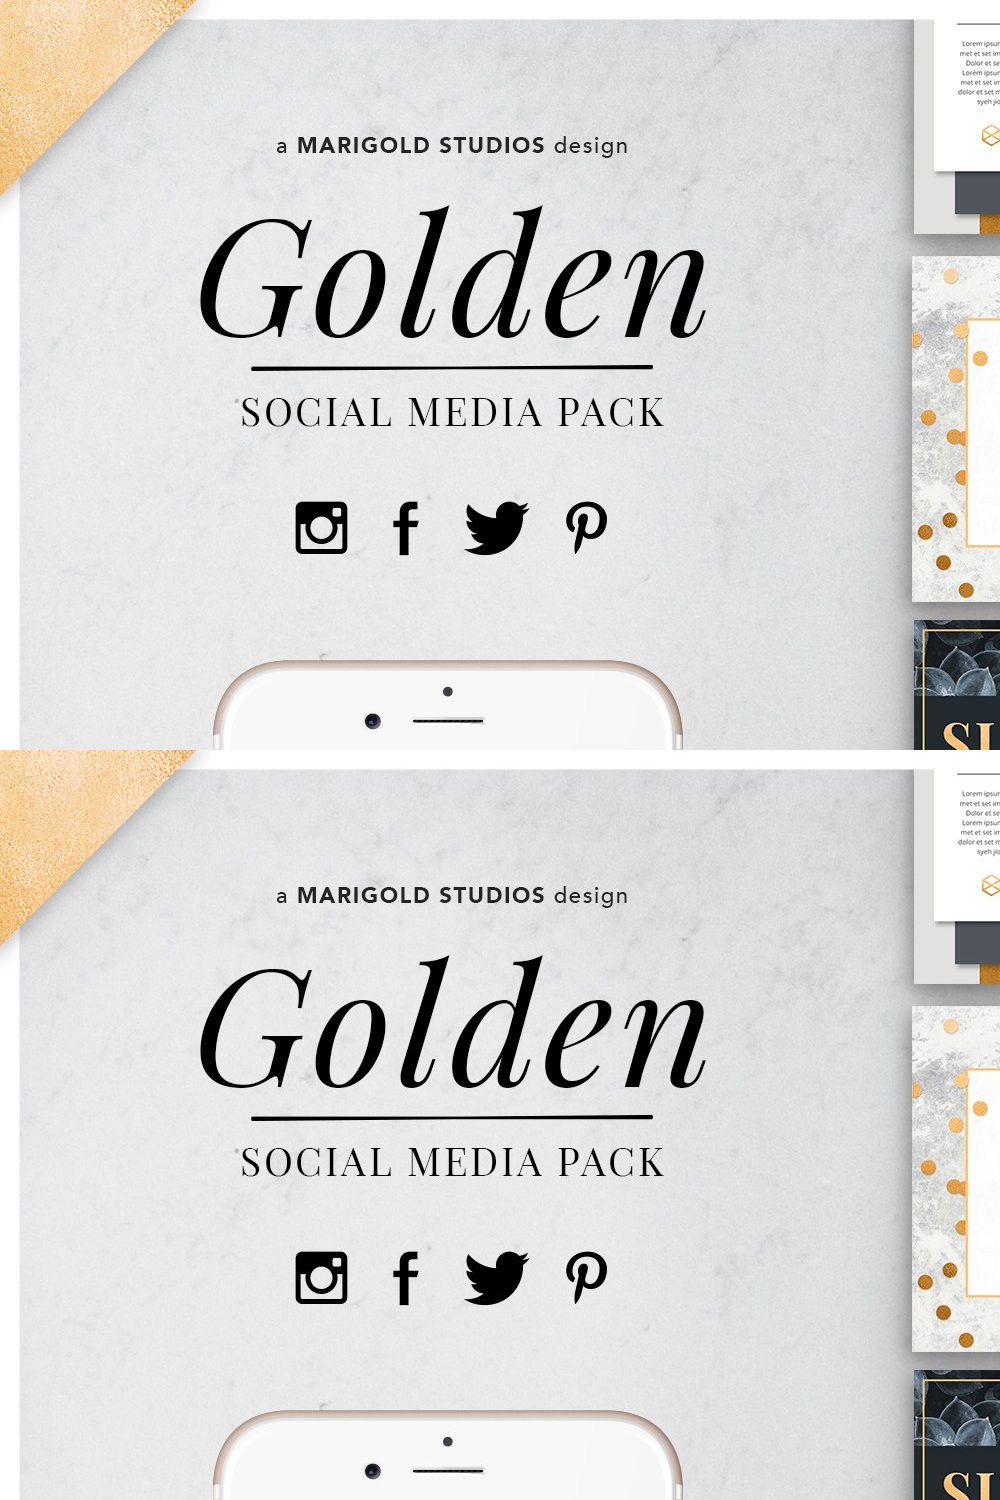 GOLDEN | Social Media Pack pinterest preview image.